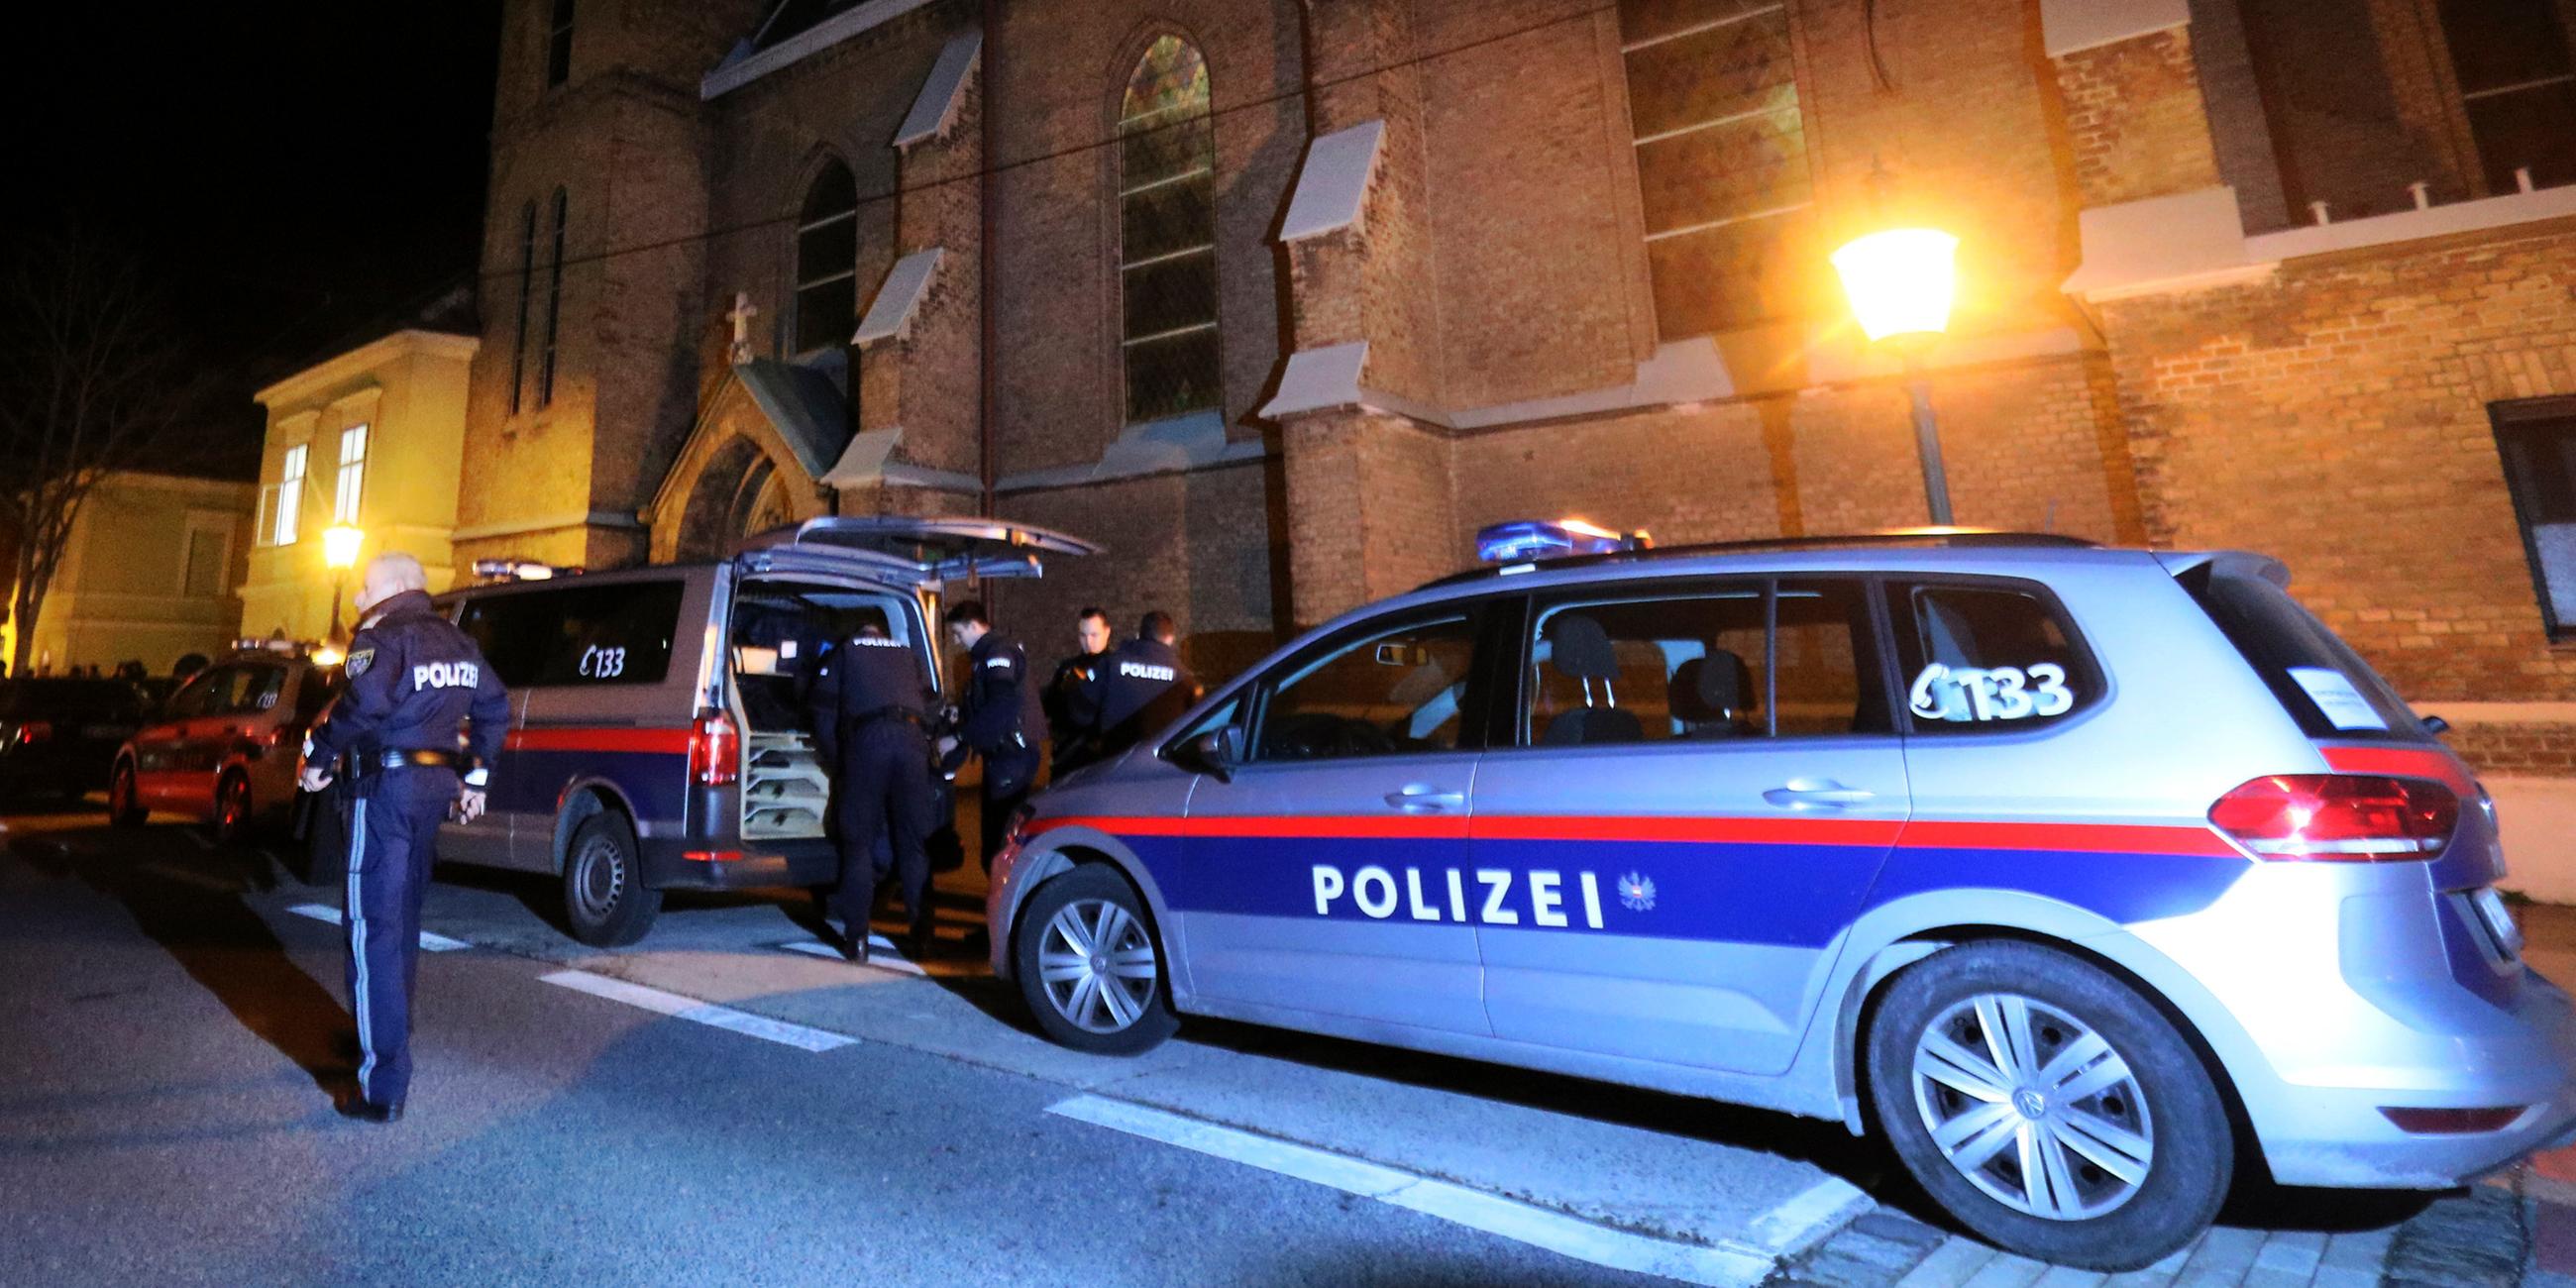 Archiv: Polizisten und zwei Polizeiautos stehen vor einer Kirche in Wien am 27.12.2018